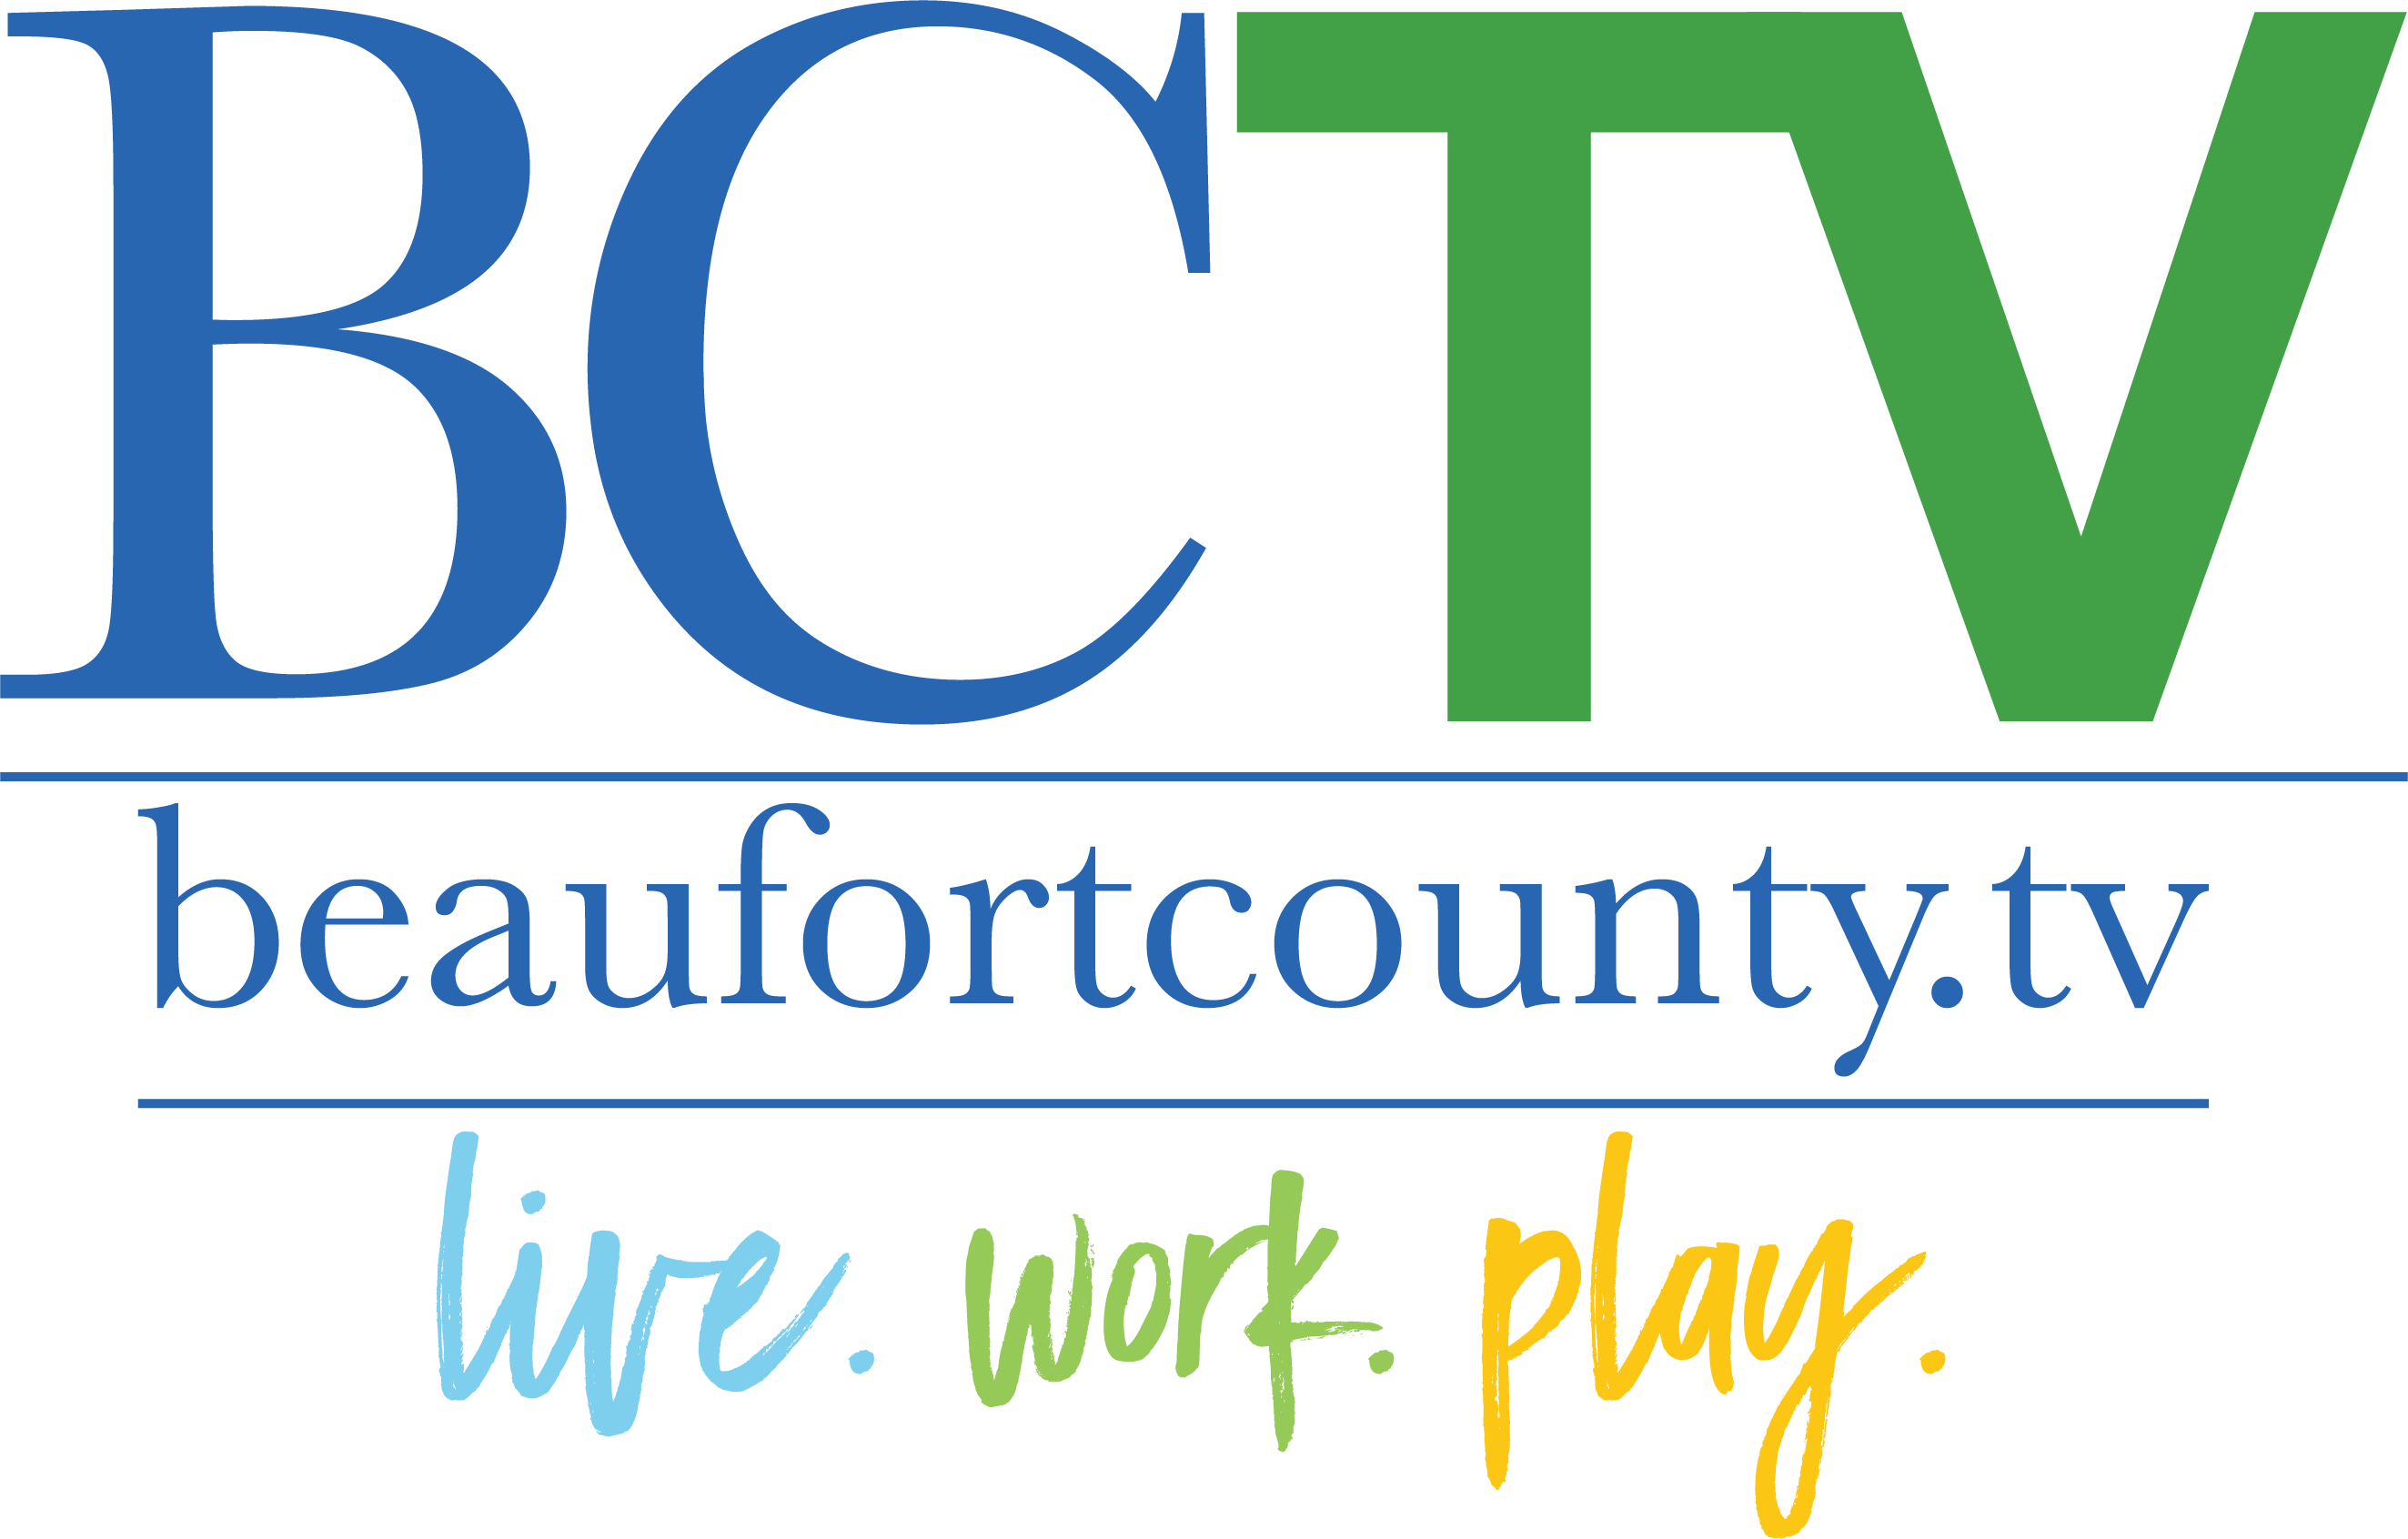 BCTV_logo_main.png